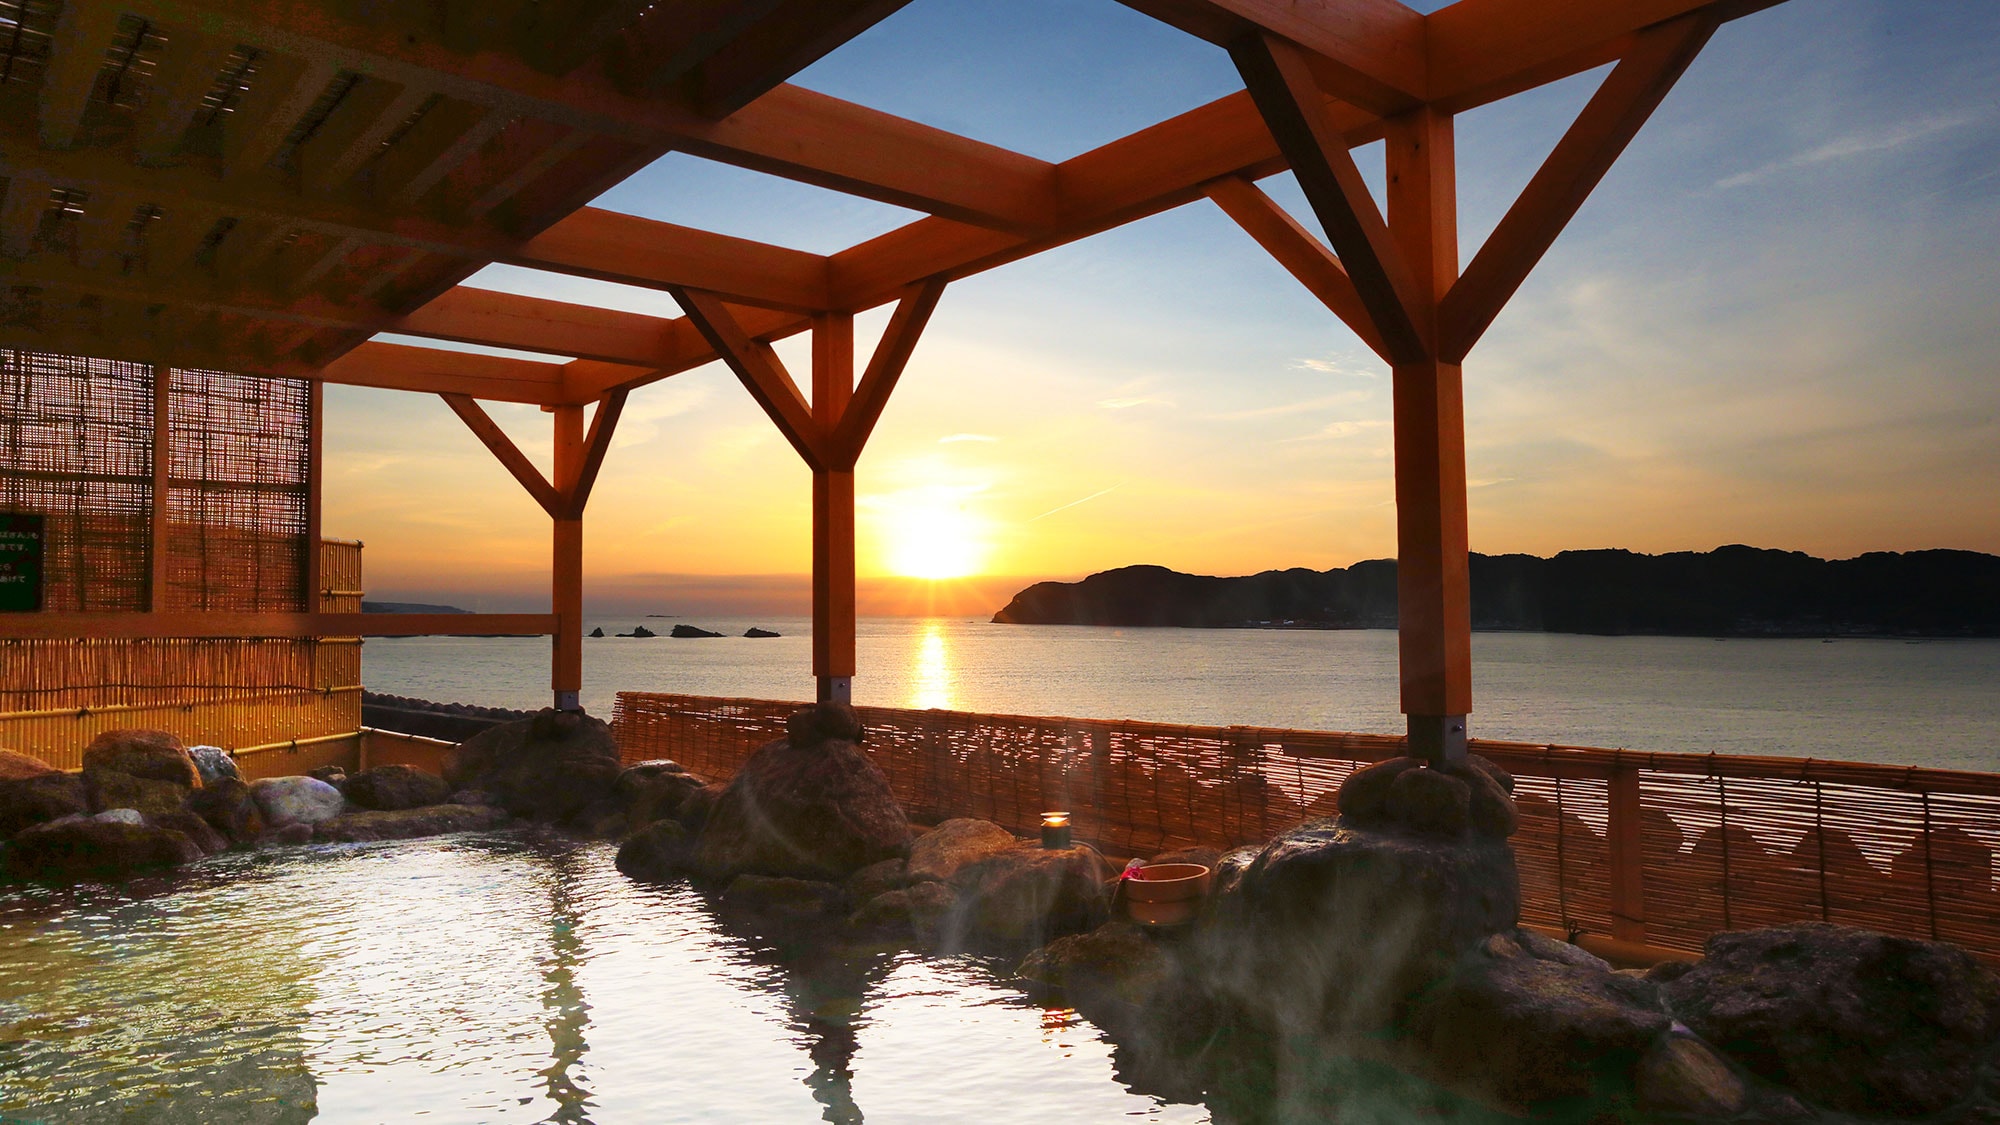  ในวันที่อากาศแจ่มใส คุณสามารถเห็นพระอาทิตย์ขึ้นที่ปลายสุดทางใต้สุดของเกาะฮอนชู